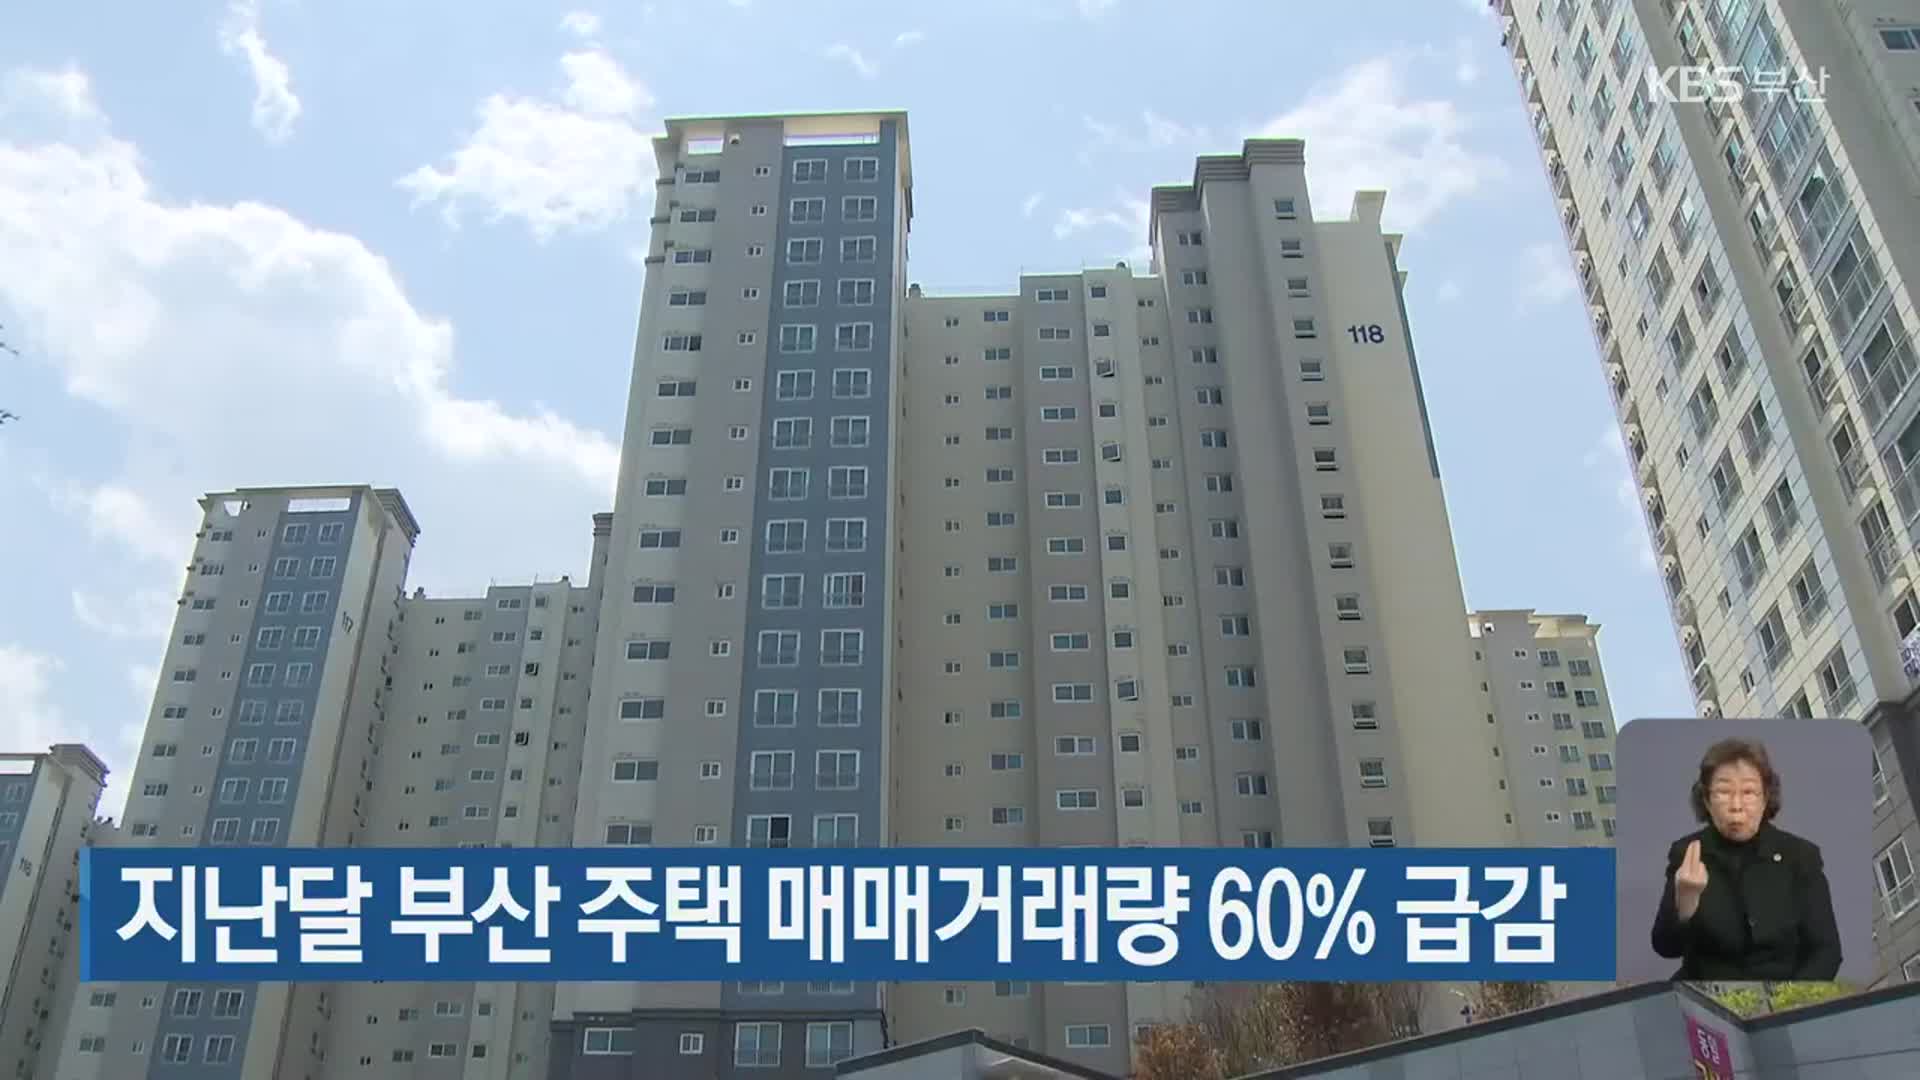 지난달 부산 주택 매매거래량 60% 급감